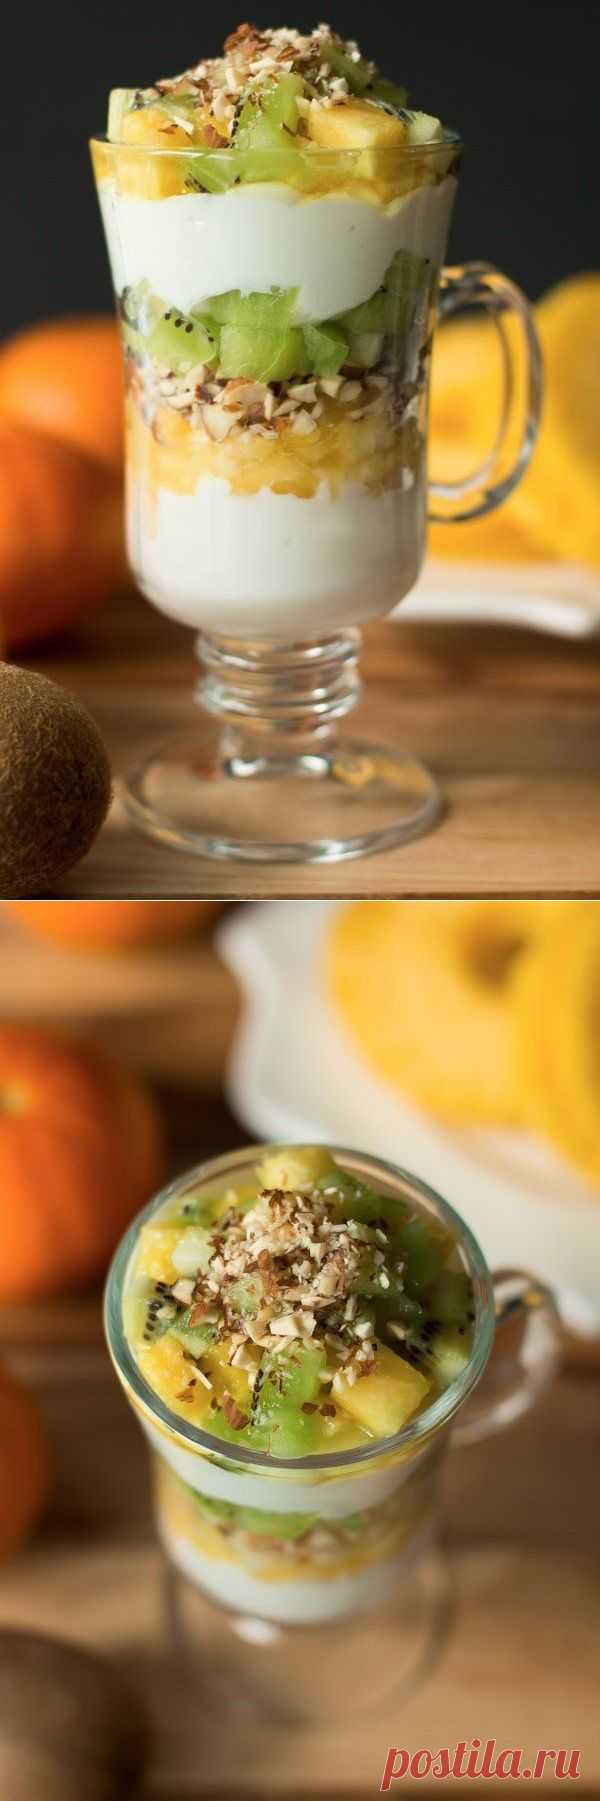 Как приготовить парфе с киви и ананасом - рецепт, ингридиенты и фотографии